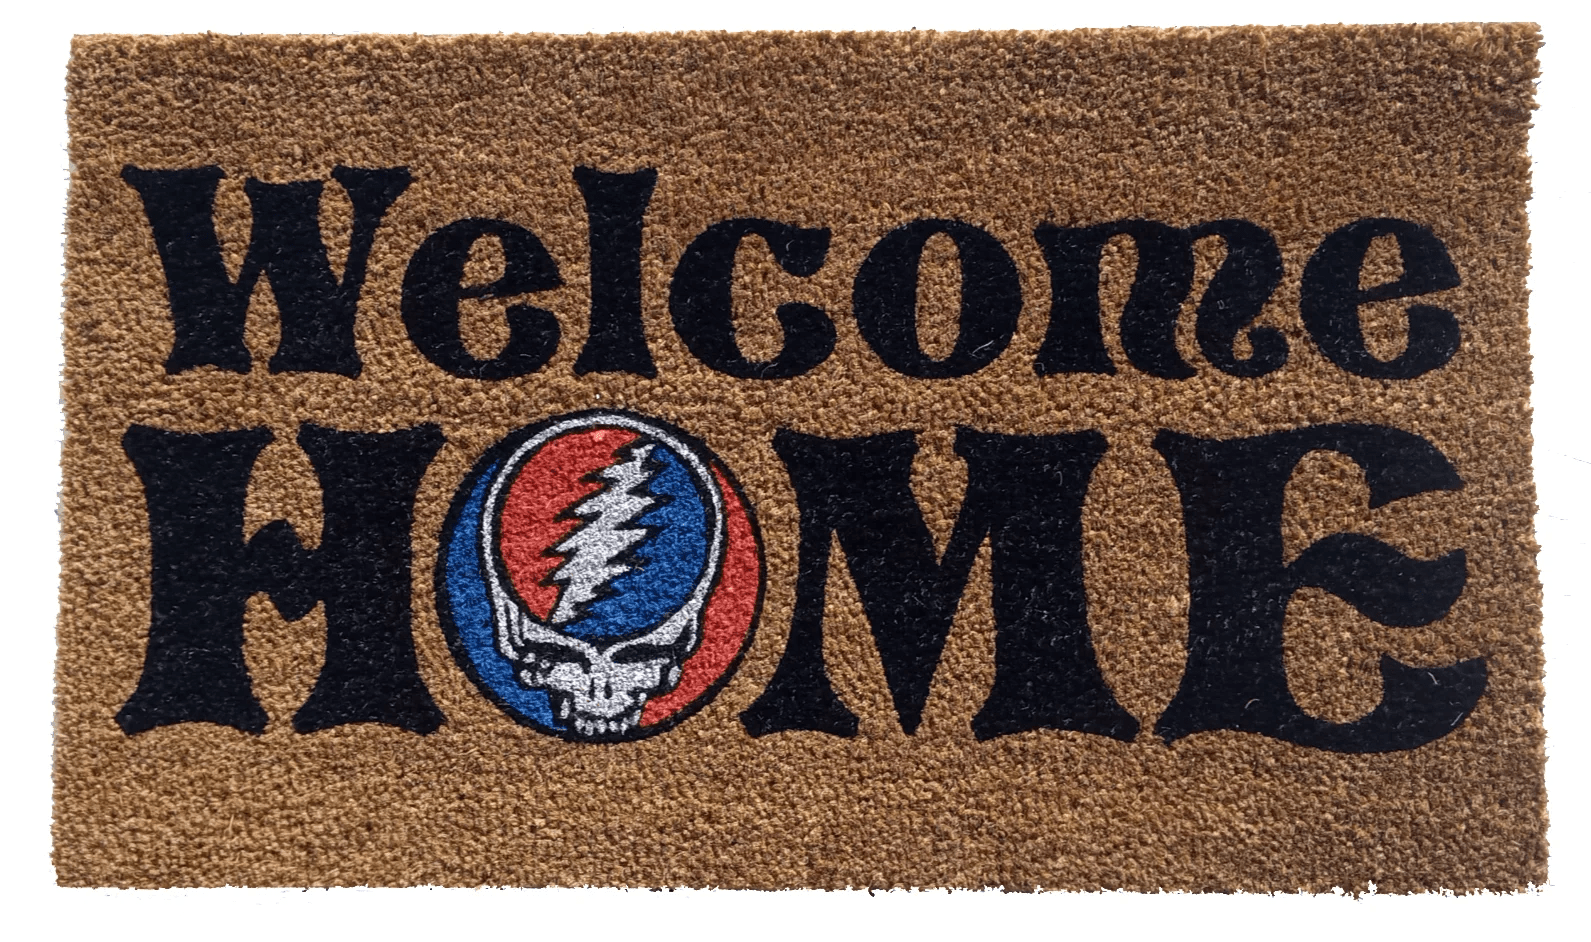 Grateful Dead - Welcome Home! (17"x29" Doormat)